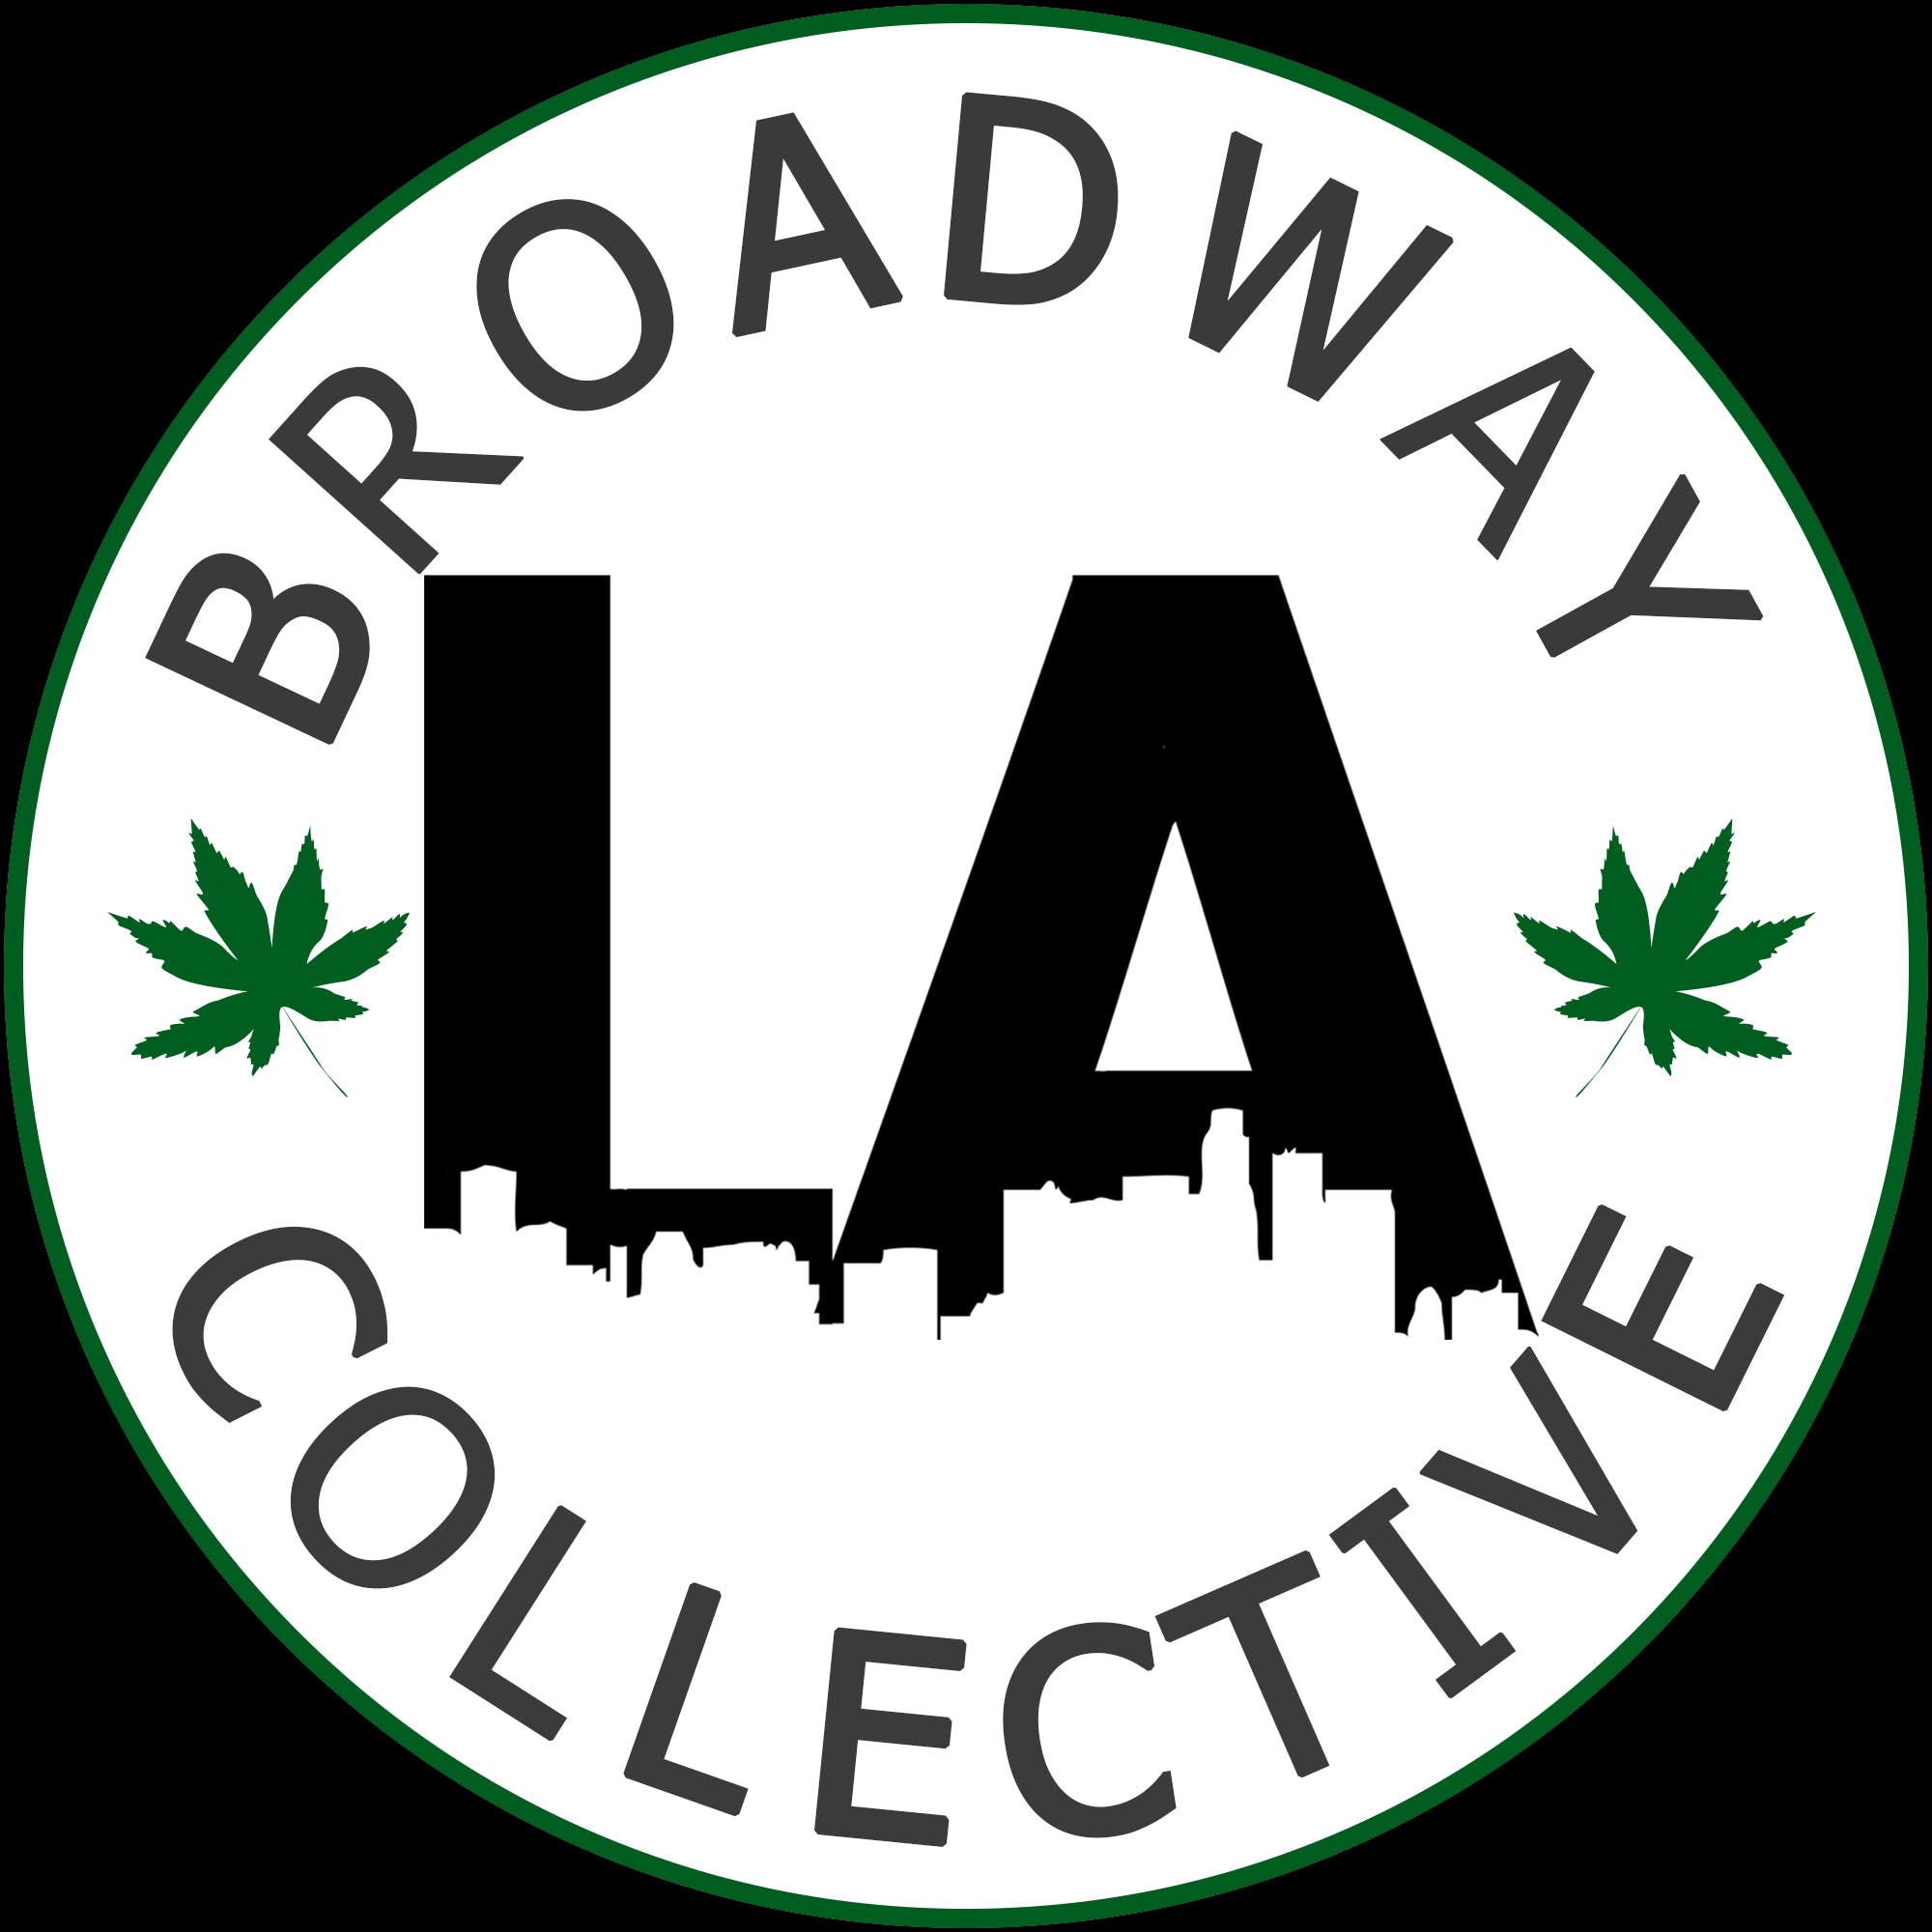 Broadway LA Pharmacy - 30 CAP - Medical Marijuana Doctors - Cannabizme.com